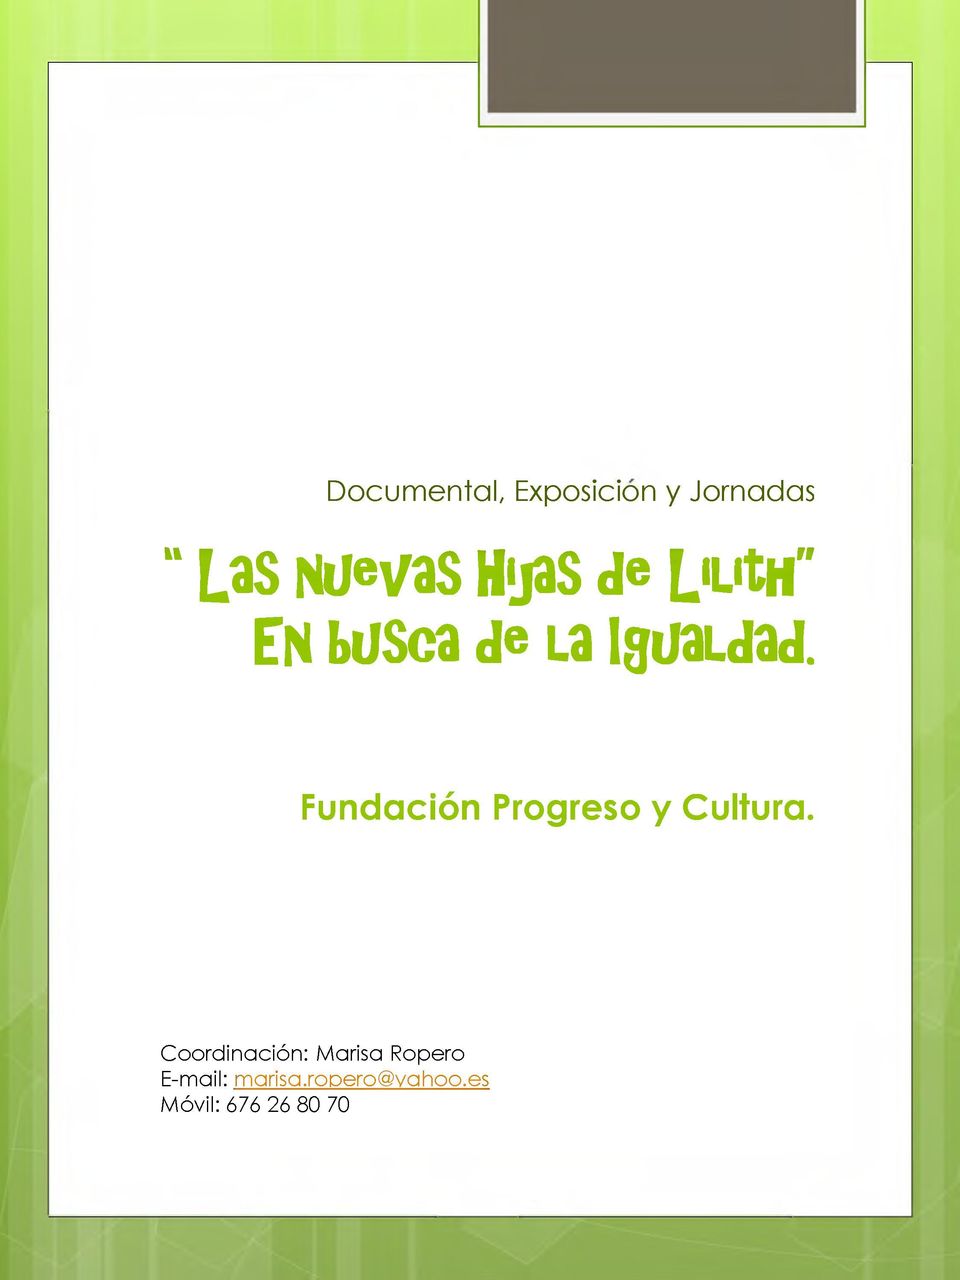 Fundación Progreso y Cultura.